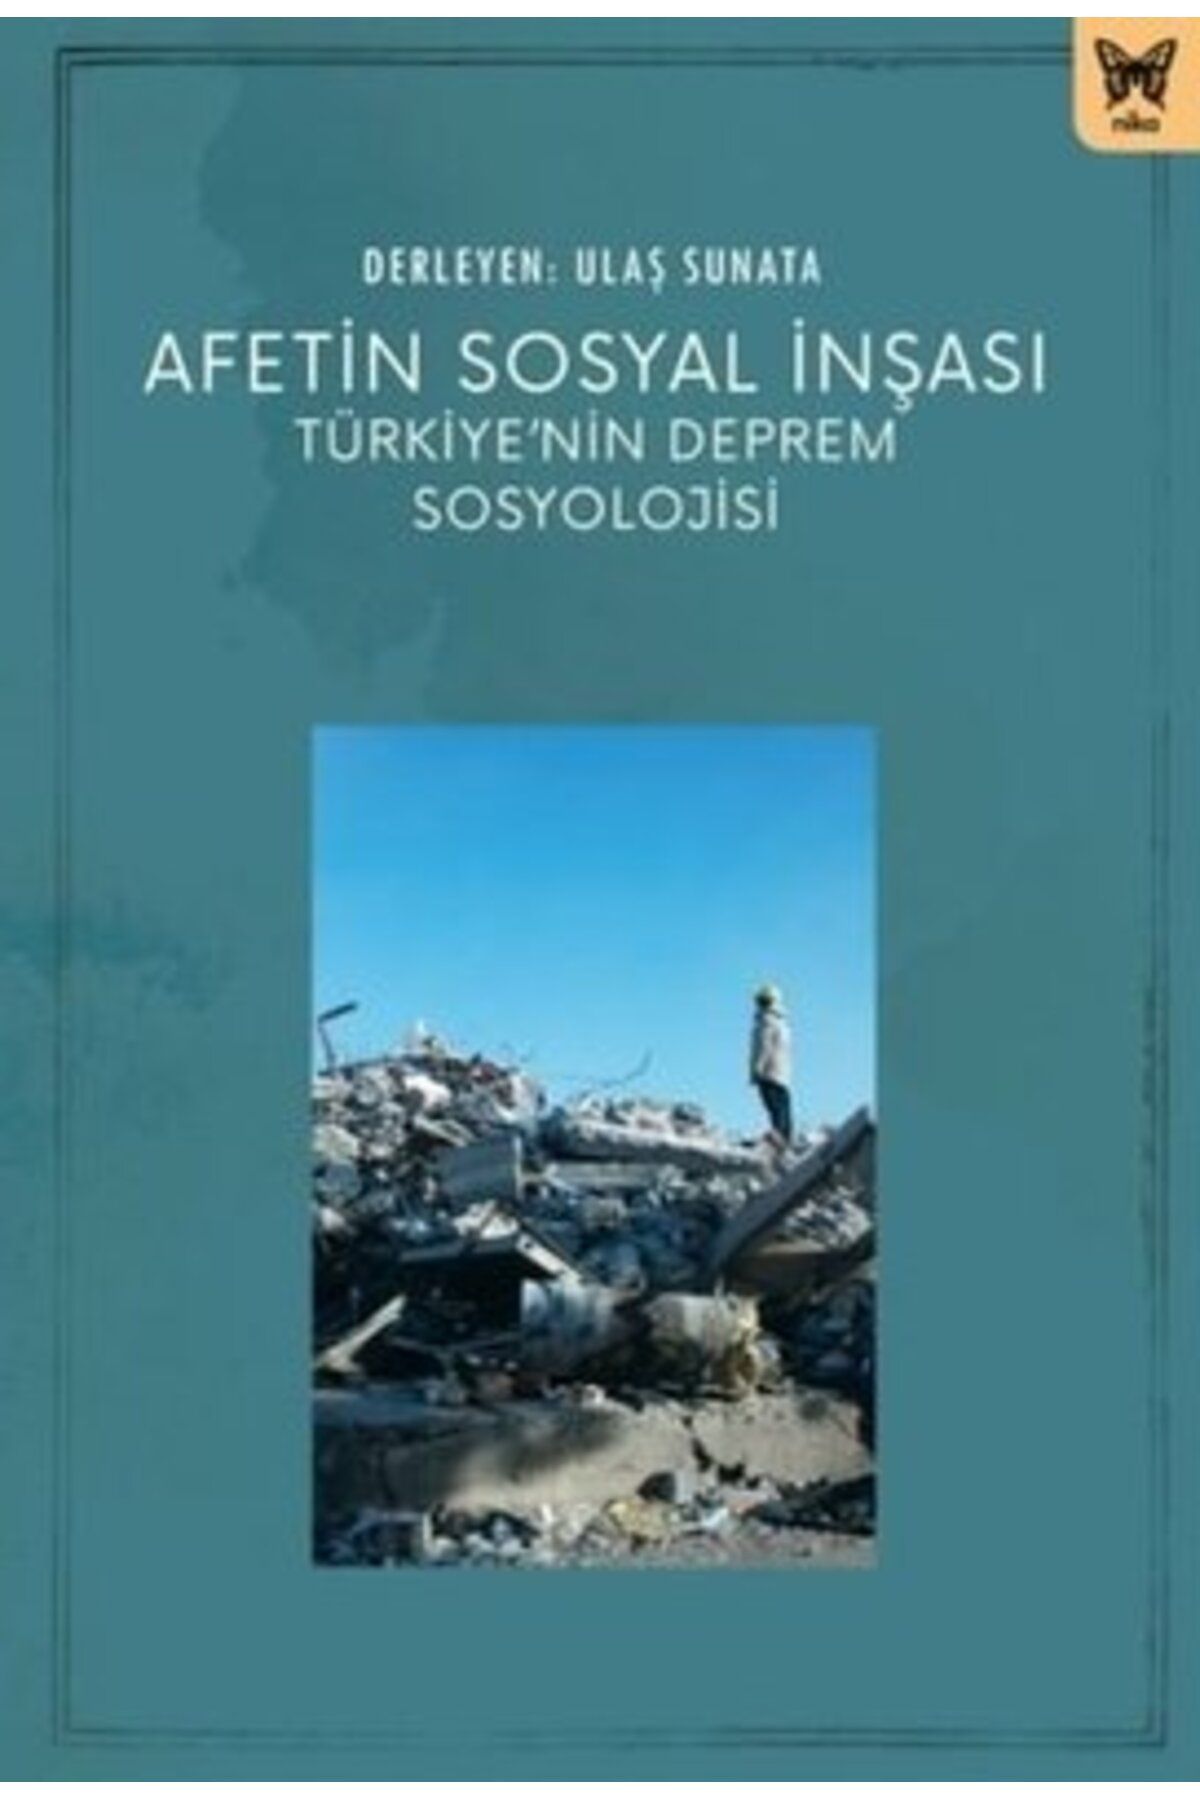 Nika Yayınevi Afetin Sosyal İnşası: Türkiye’nin Deprem Sosyolojisi kitabı - Ulaş Sunata - Nika Yayınevi